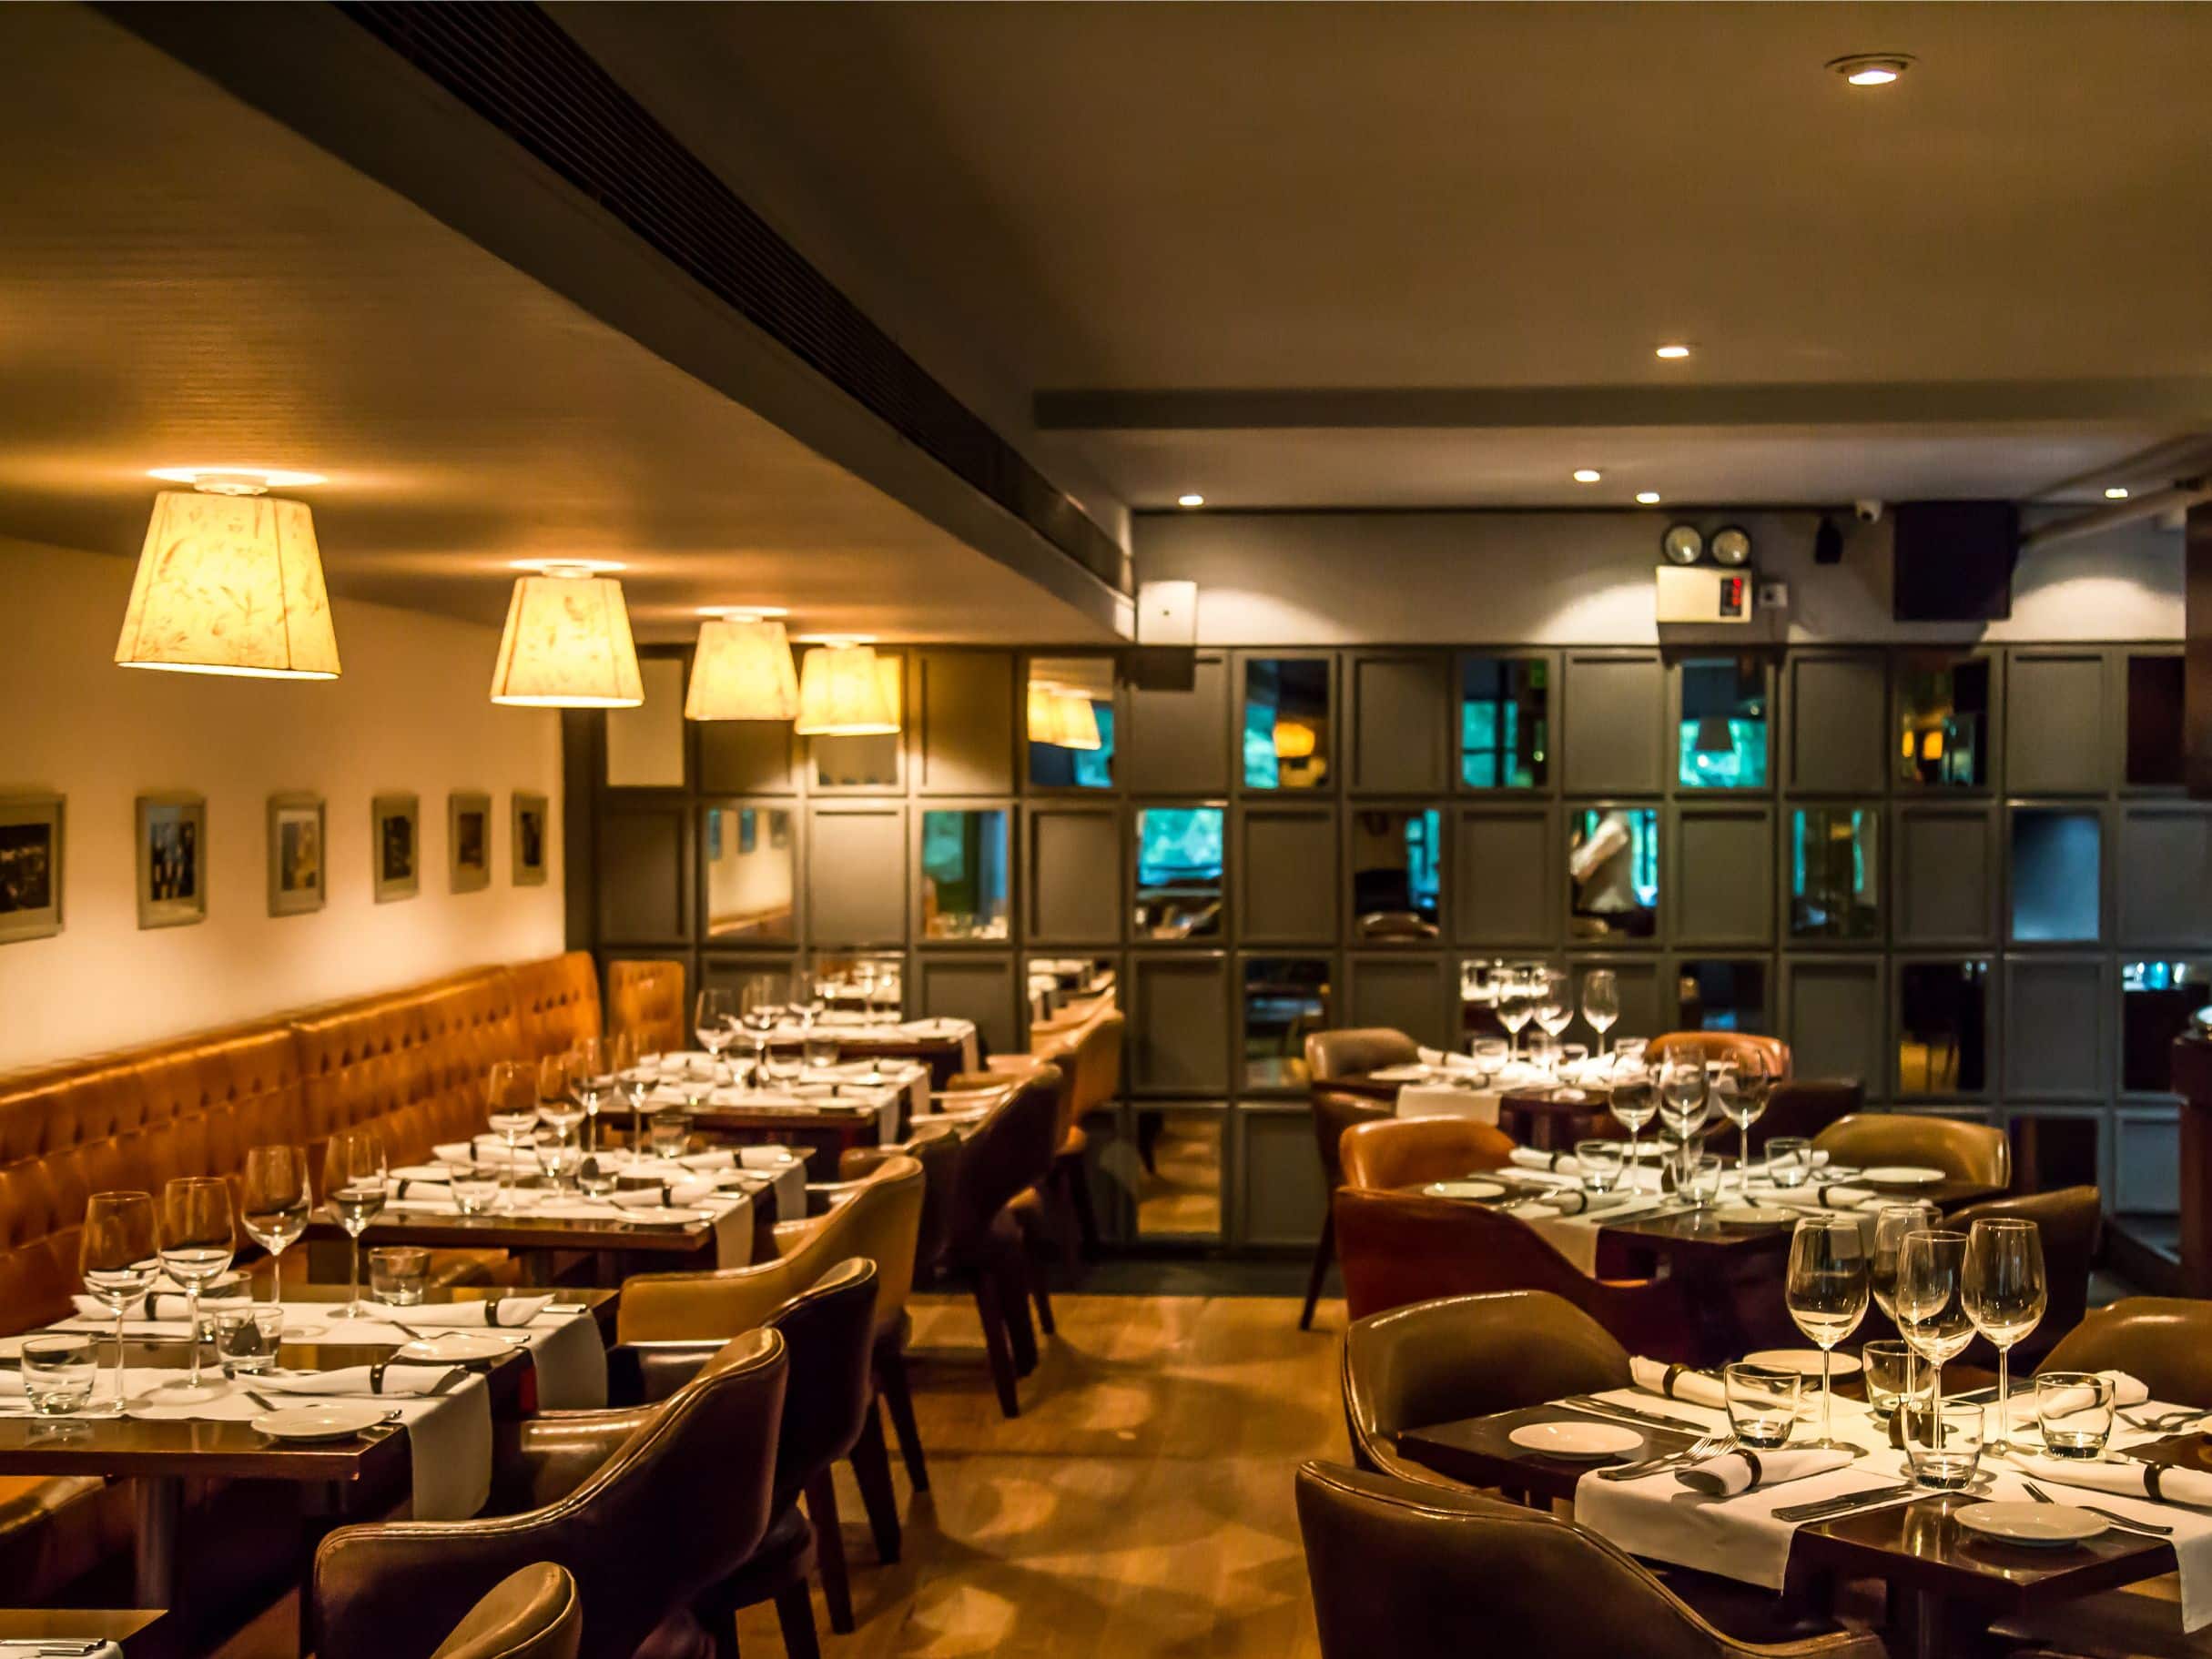 Diva - The Italian Restaurant, Greater Kailash 2 (GK2), New Delhi | Zomato